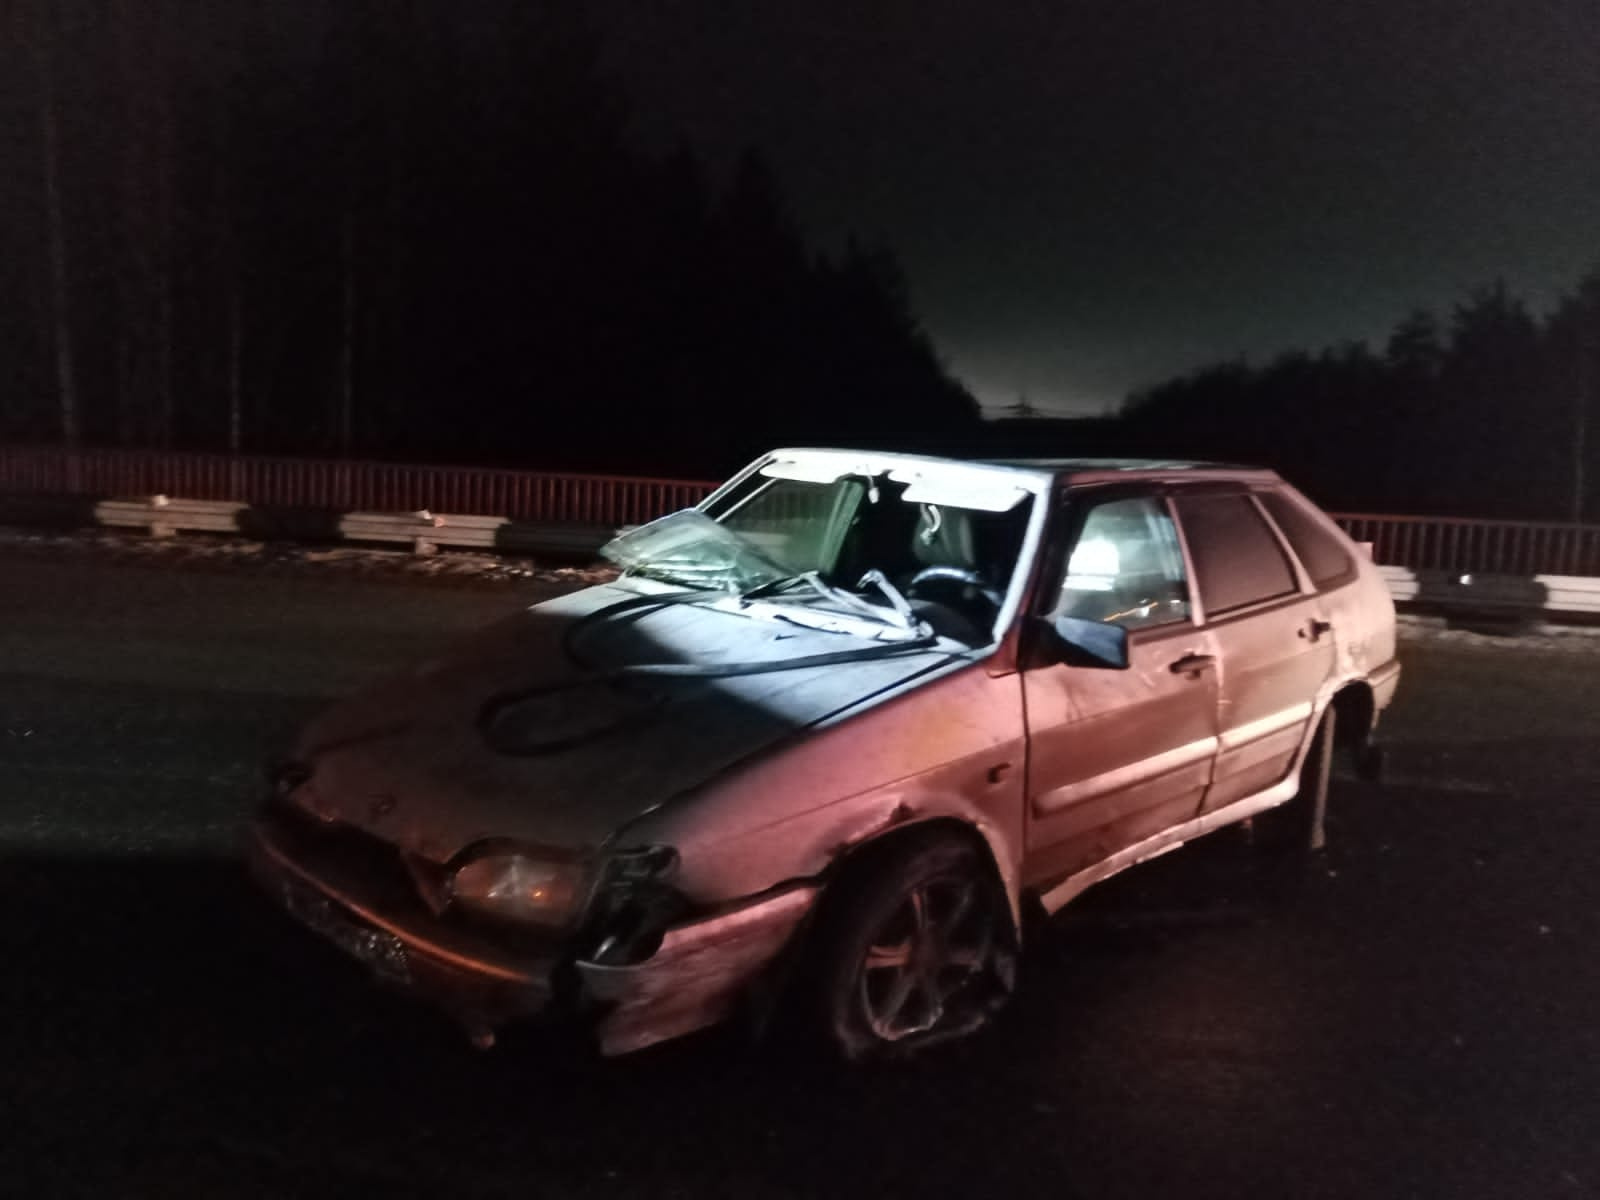 Не заметил брёвна в темноте: водитель легковушки попал в ДТП на Серовском тракте